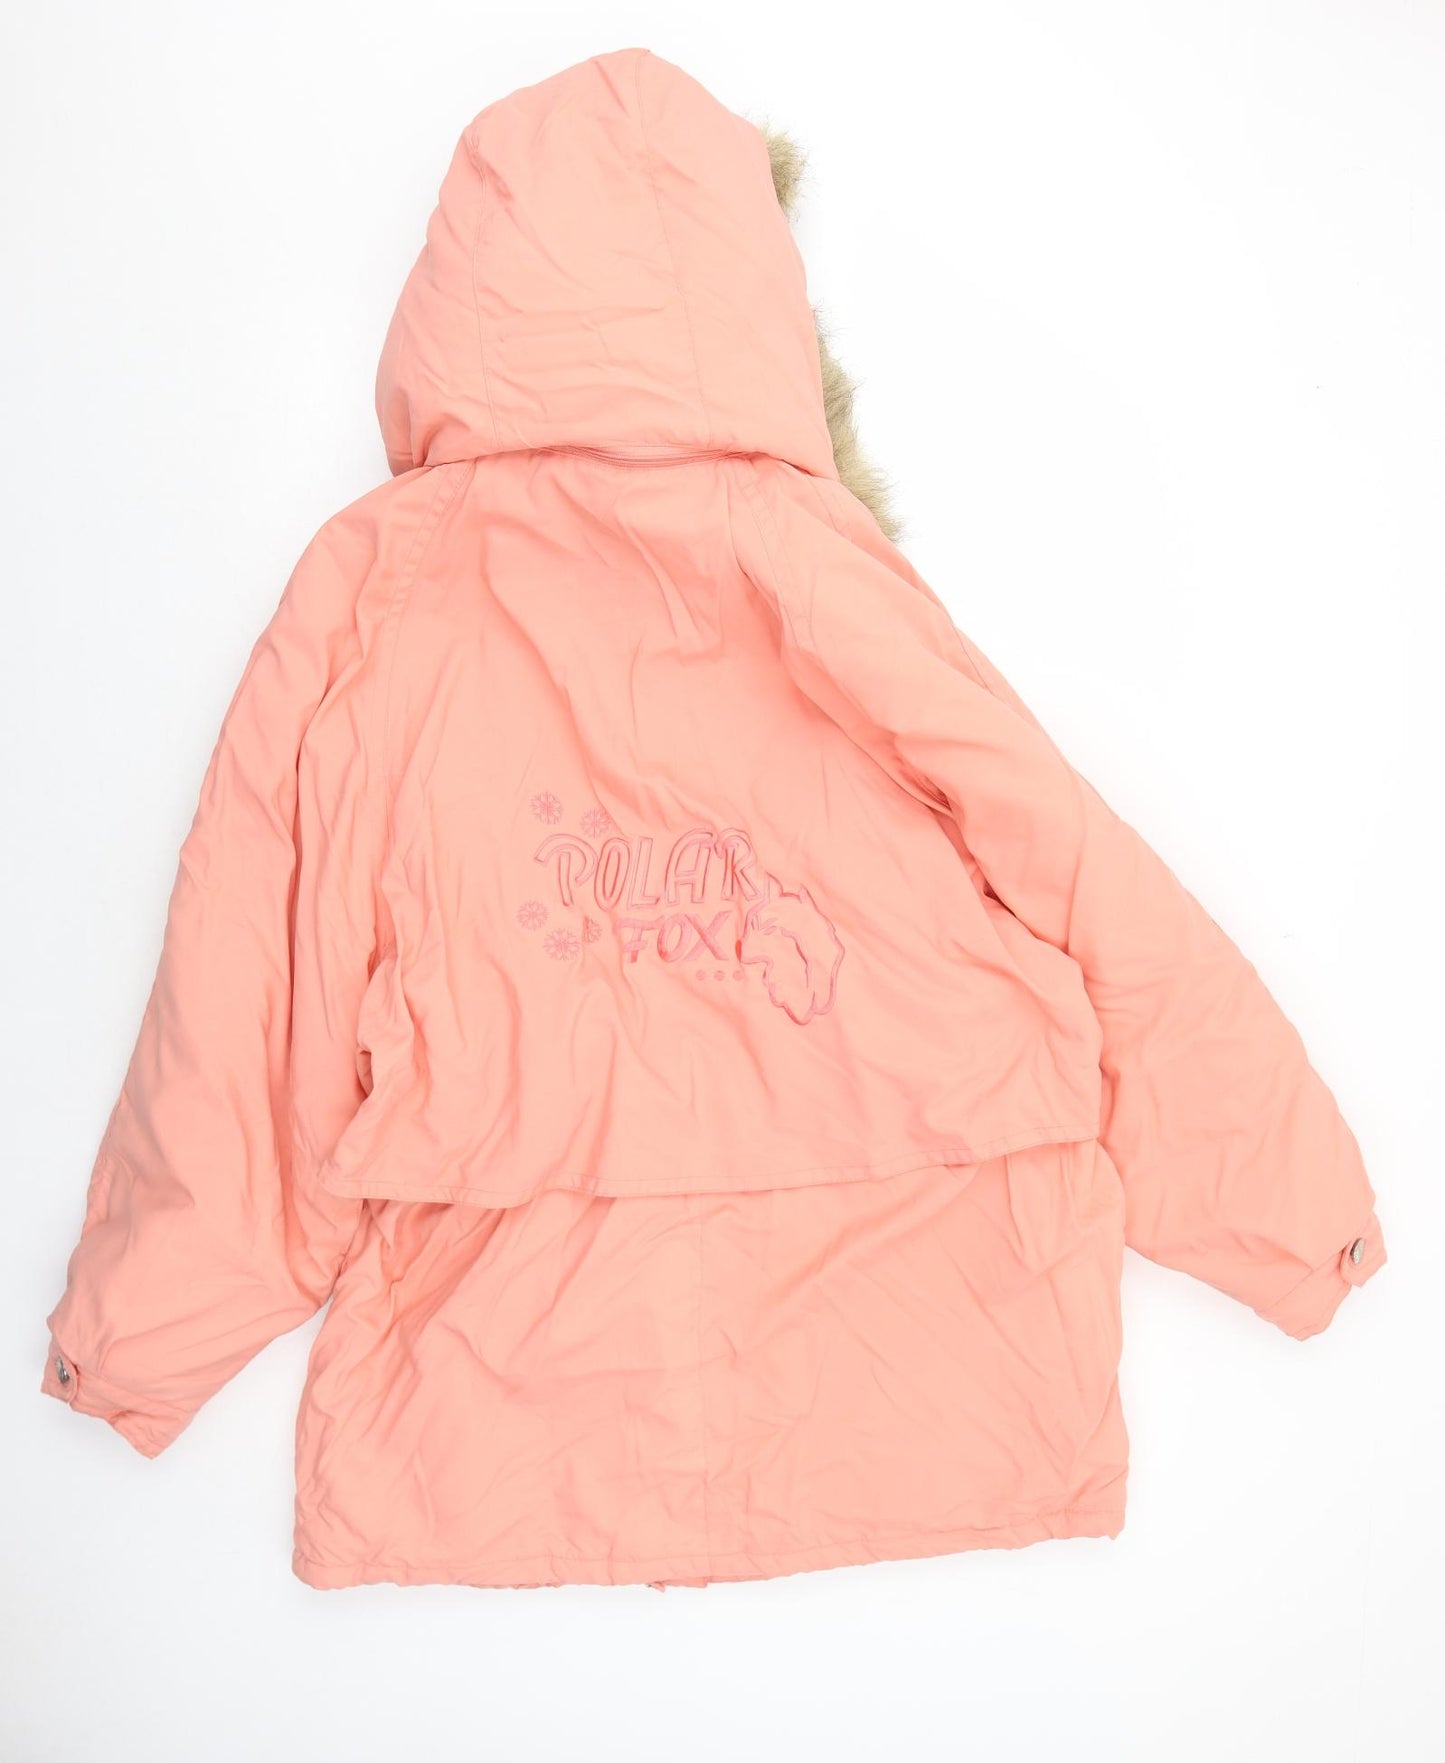 Knightsbridge Womens Pink Parka Coat Size L Zip - Fuax Fur Trim